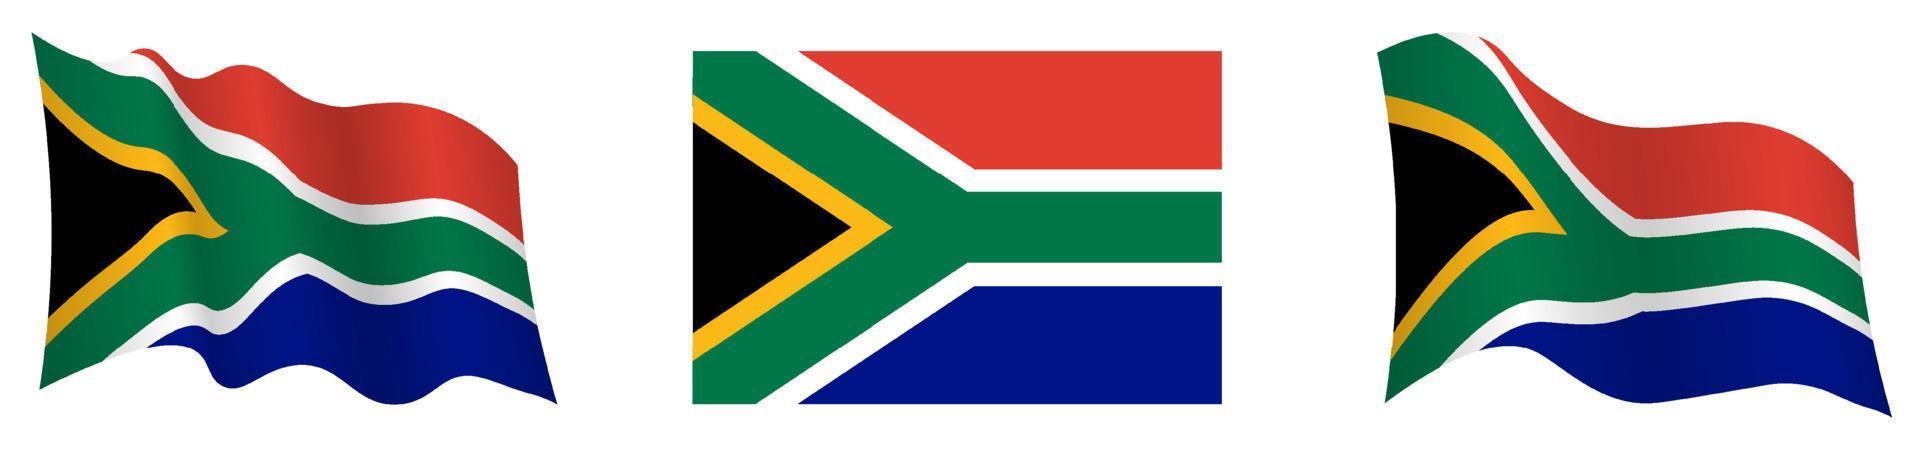 bandeira da áfrica do sul em posição estática e em movimento, desenvolvendo-se ao vento em cores e tamanhos exatos, sobre fundo branco vetor